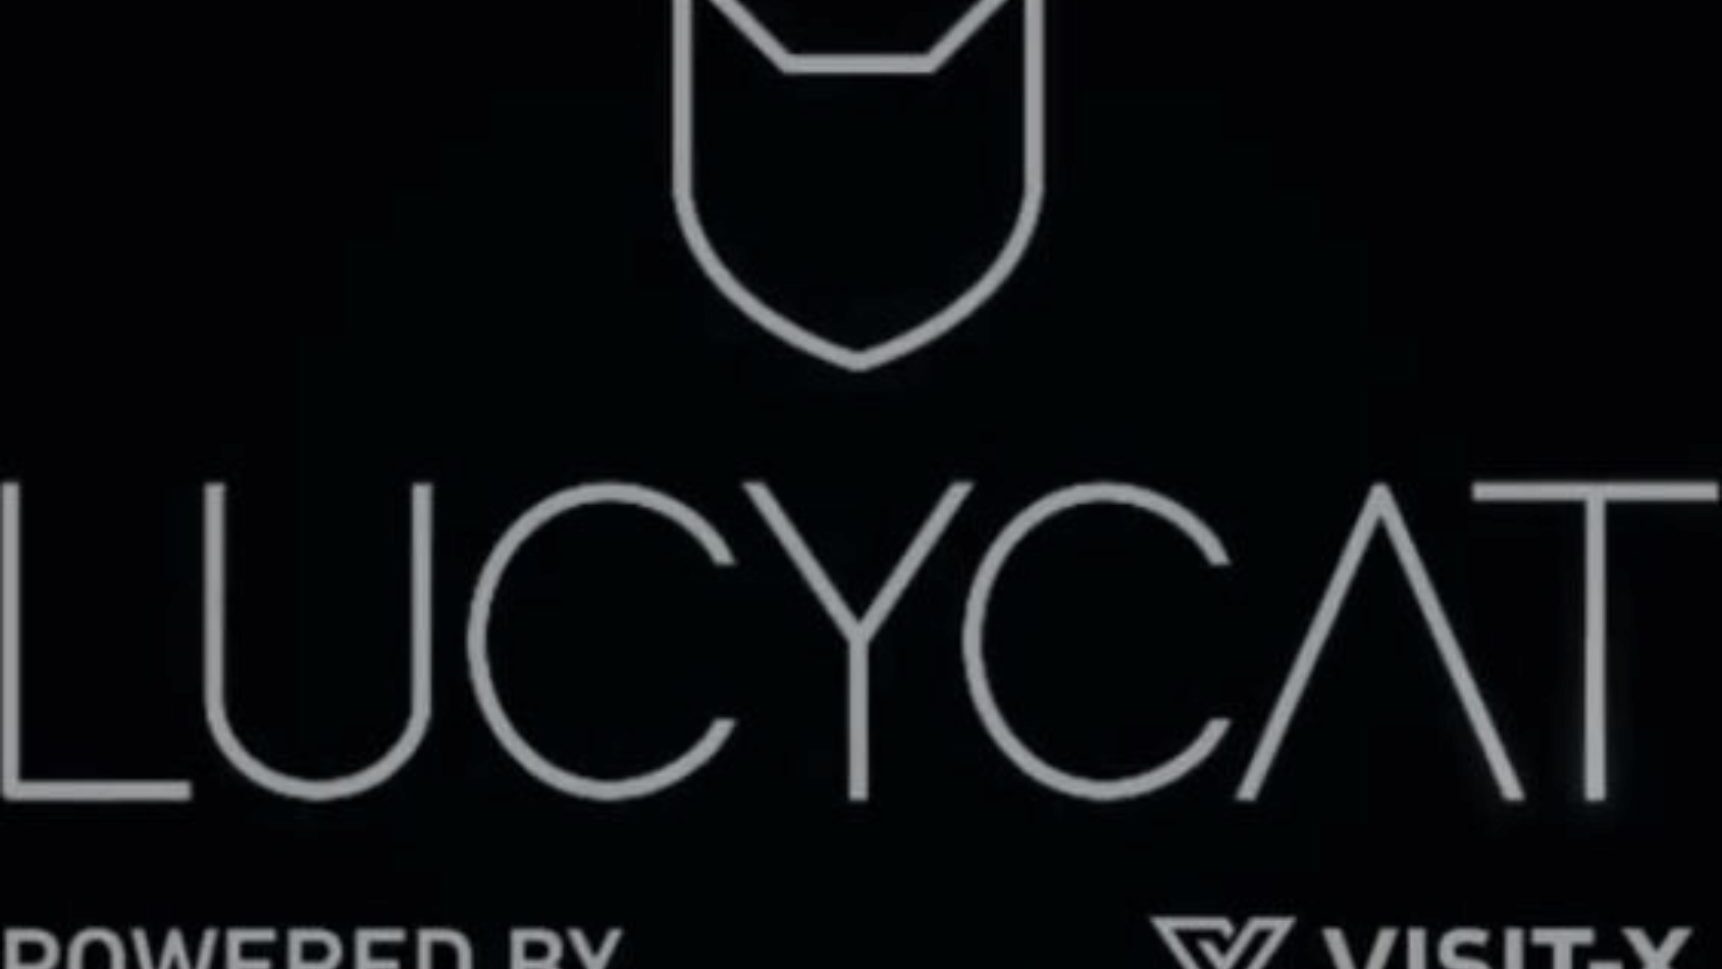 Desafío interactivo - Lucy Cat